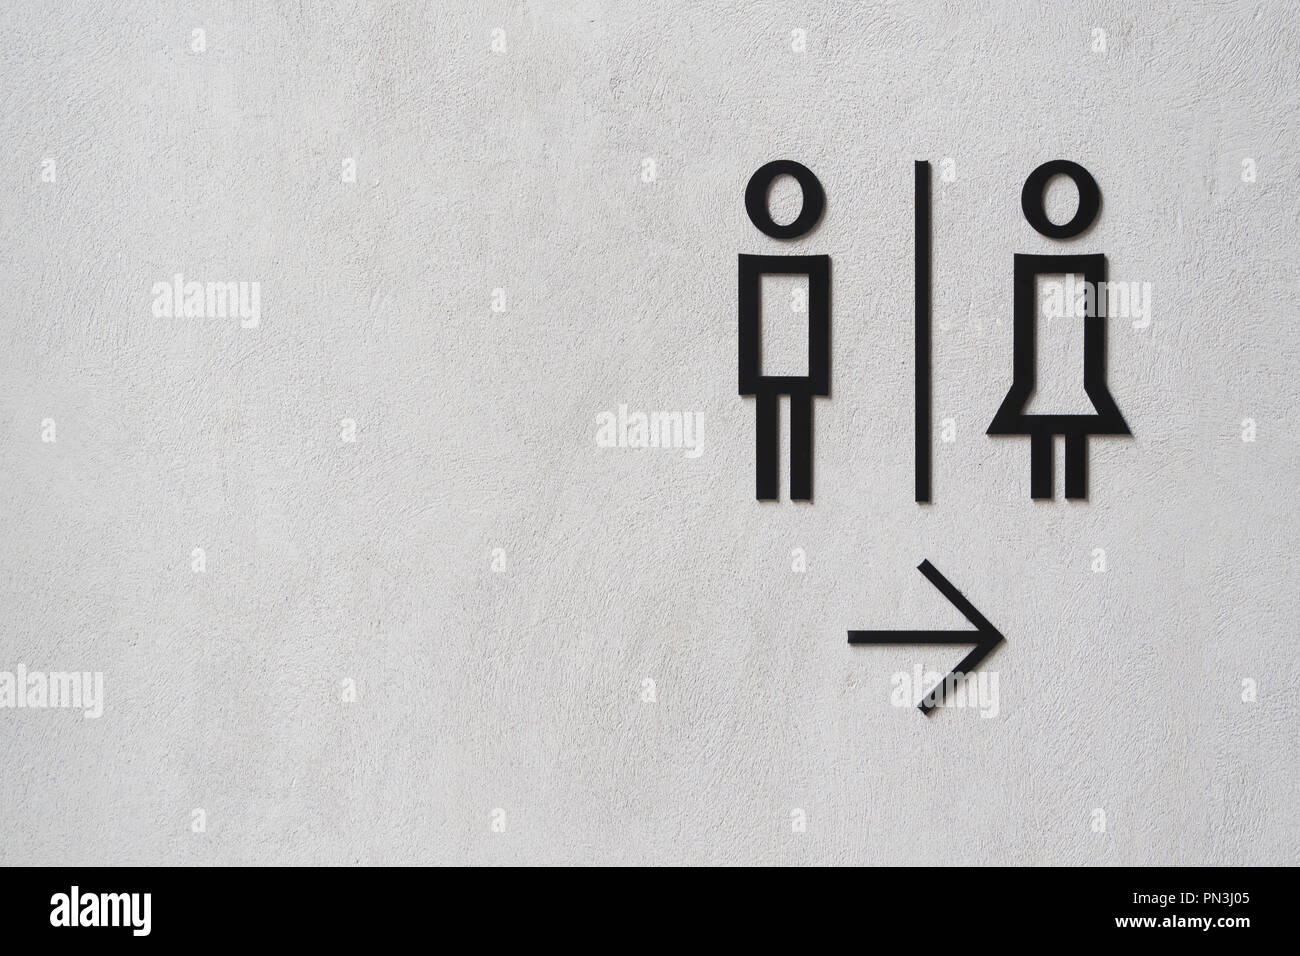 L'homme moderne et toilettes publiques femme signe sur le mur de ciment avec copie espace. public restroom sign au style loft mur de ciment. Banque D'Images